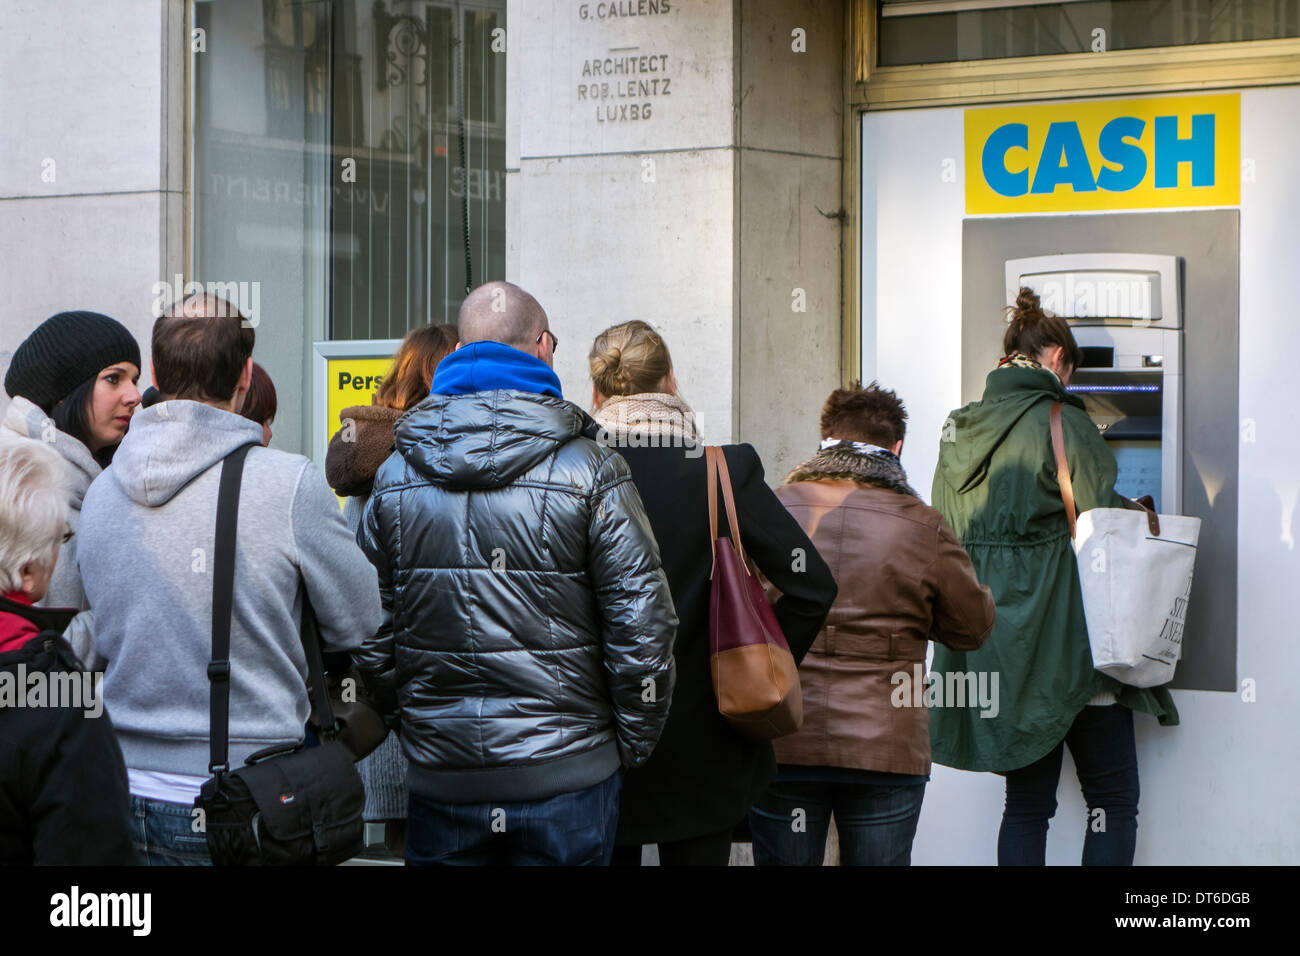 Les clients en attente dans la file d'attente pour recueillir de l'argent au distributeur Le distributeur de billets de banque dans la rue commerçante en hiver Banque D'Images